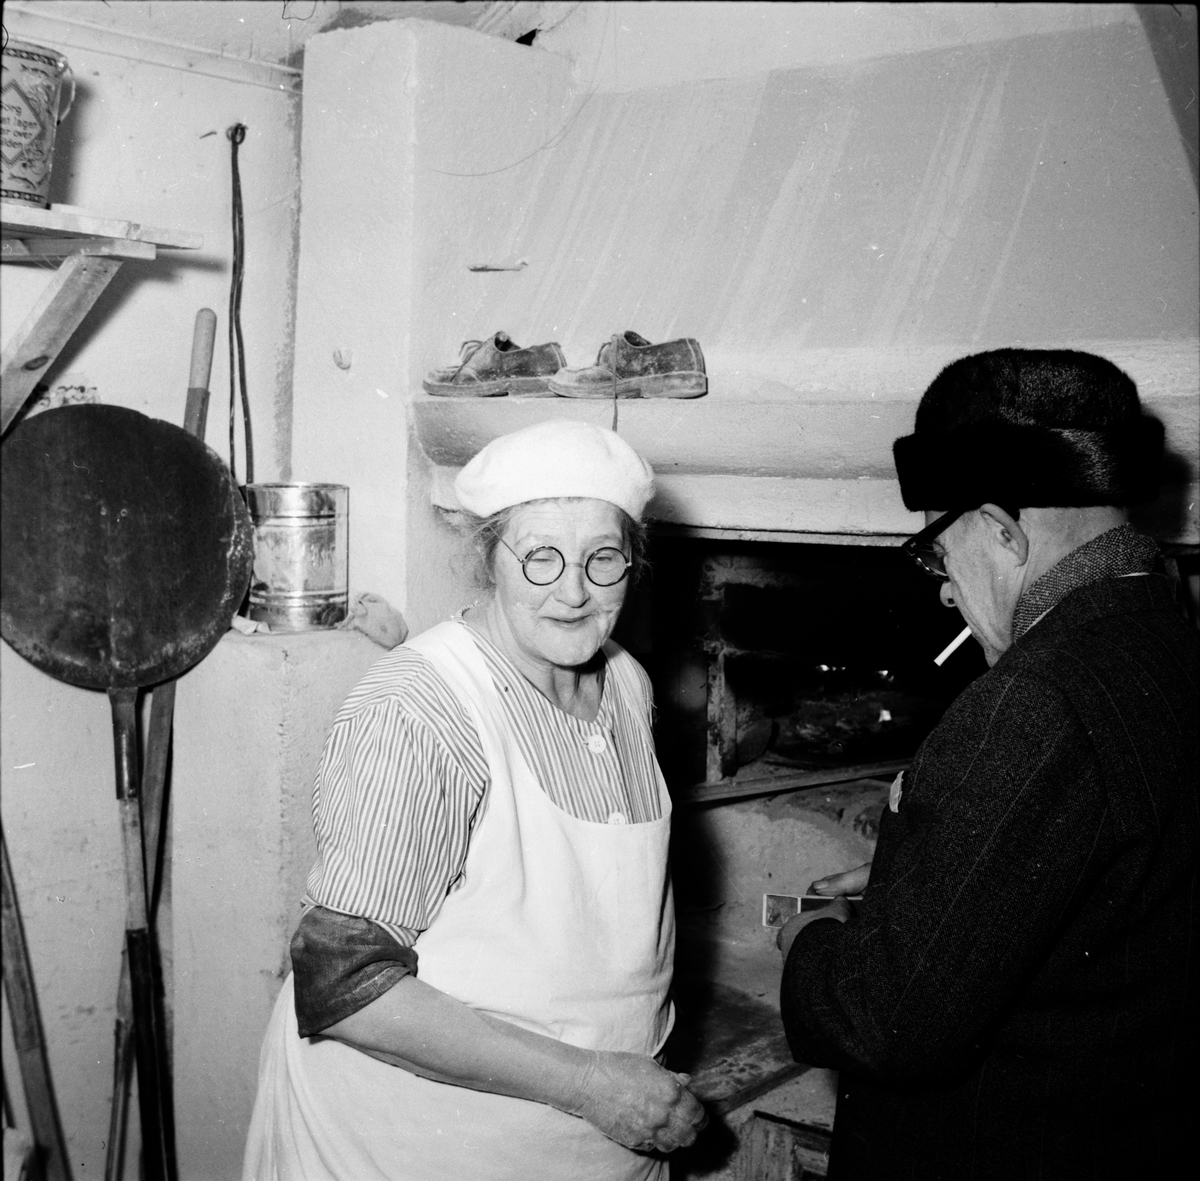 Bakerskan Arvida Johansson bakar Ovanåkersbröd.
Edsbyn december 1956.